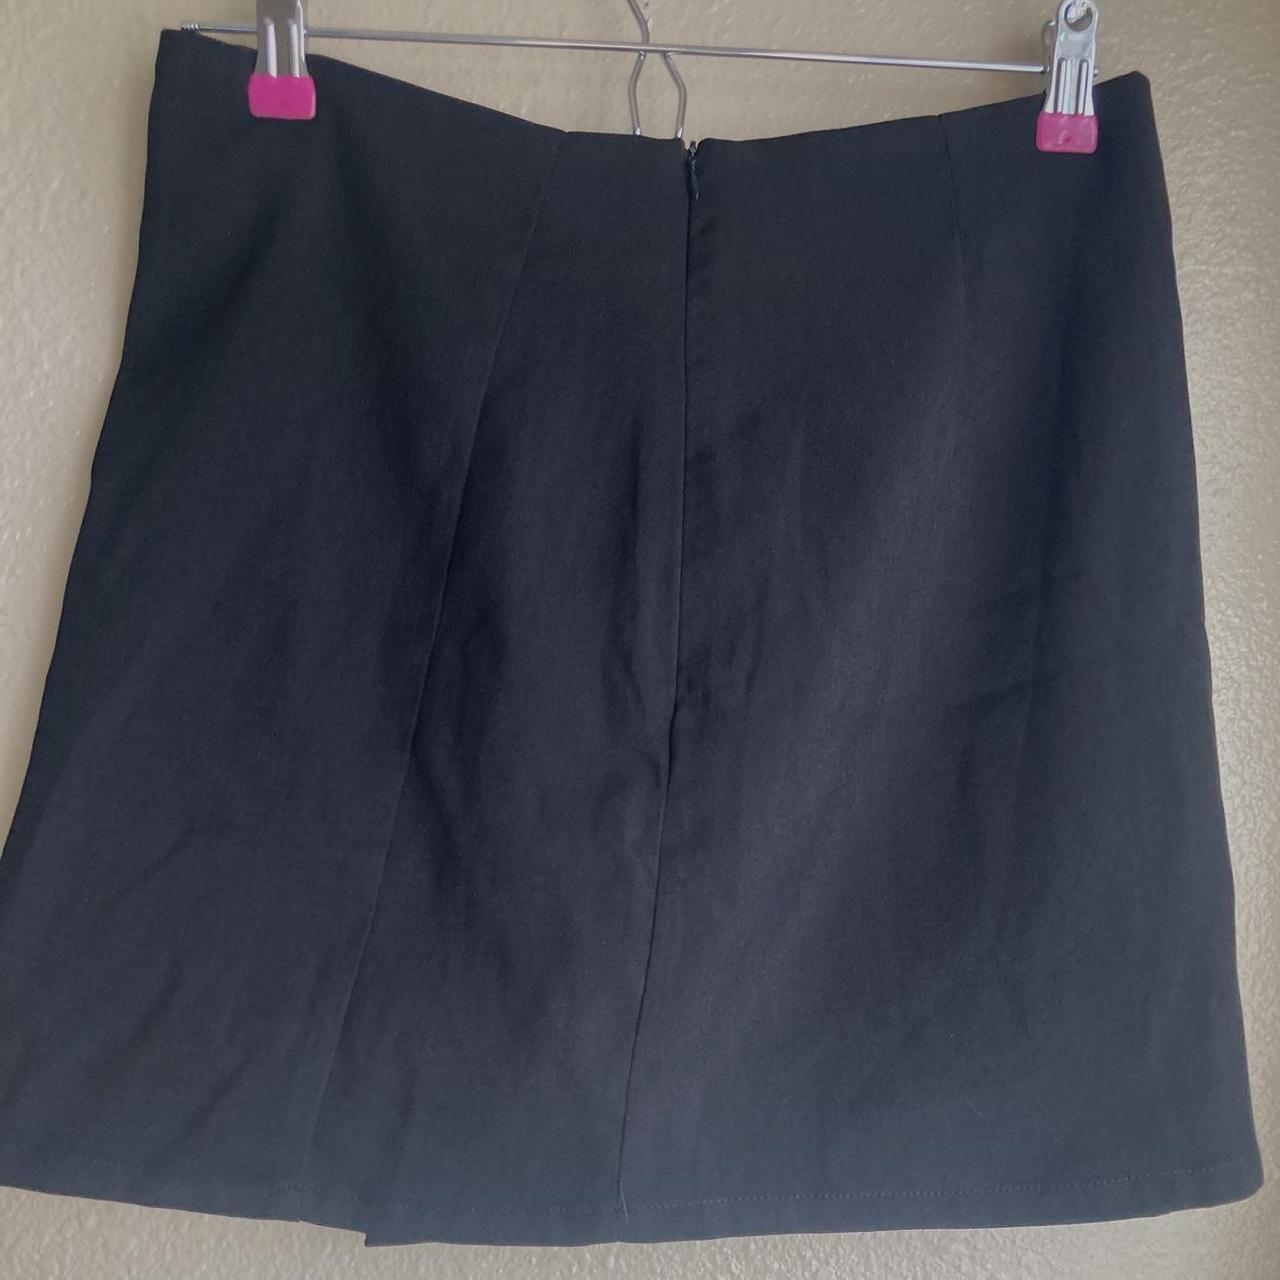 Cider Women's Black Skirt (2)